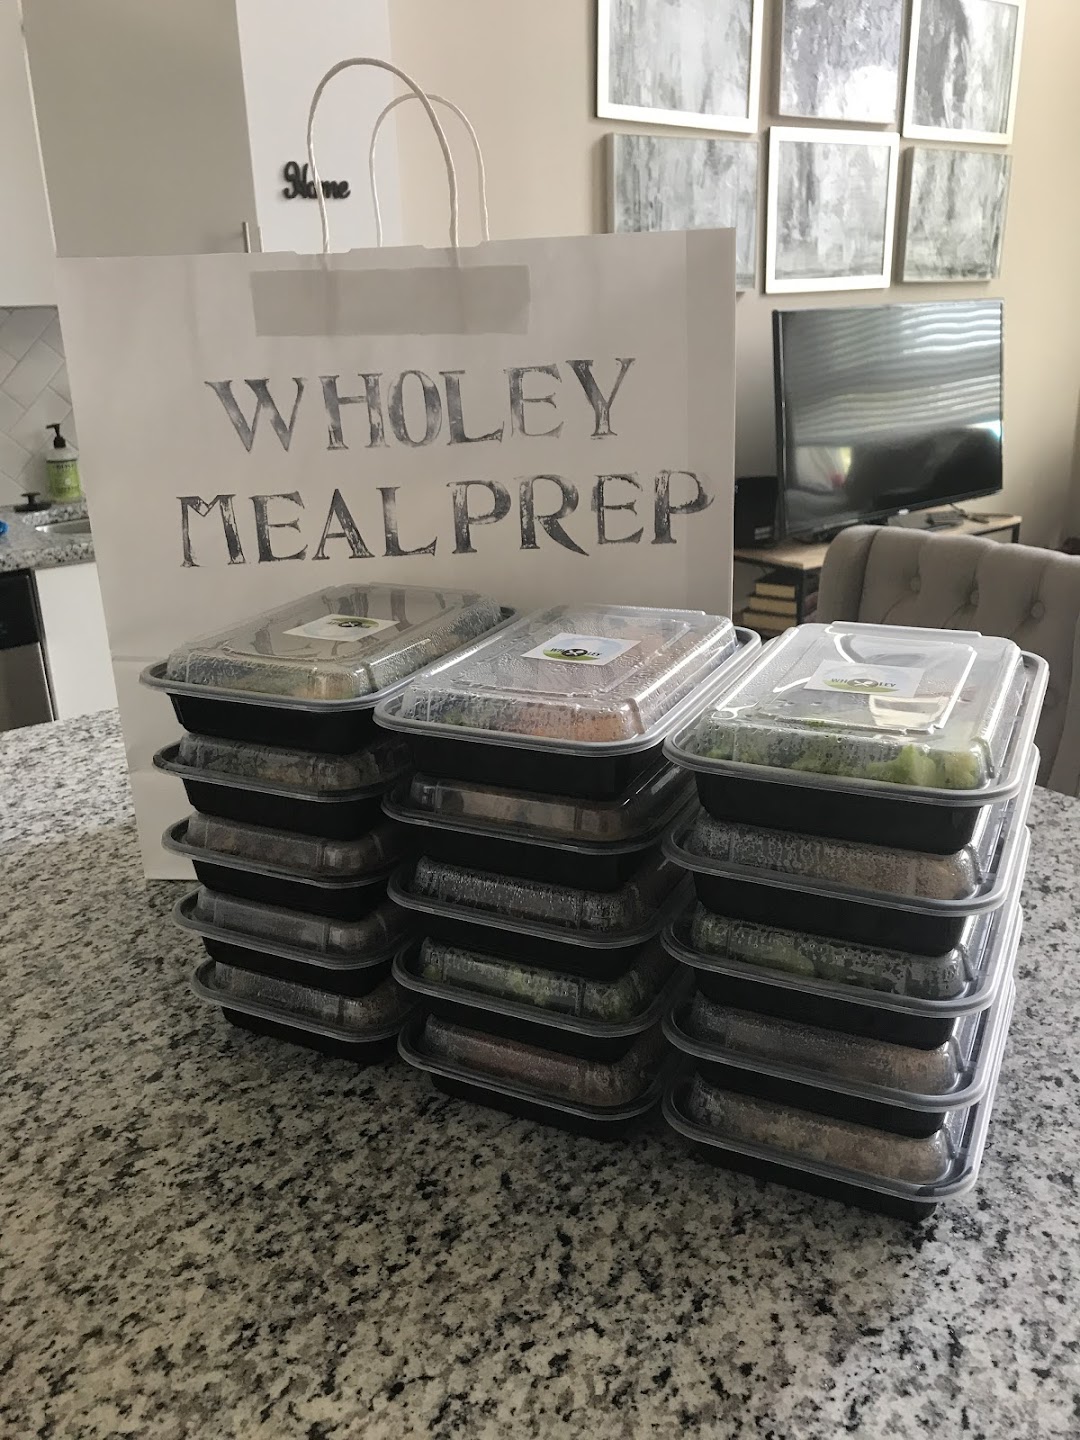 Wholey Meal Prep LLC